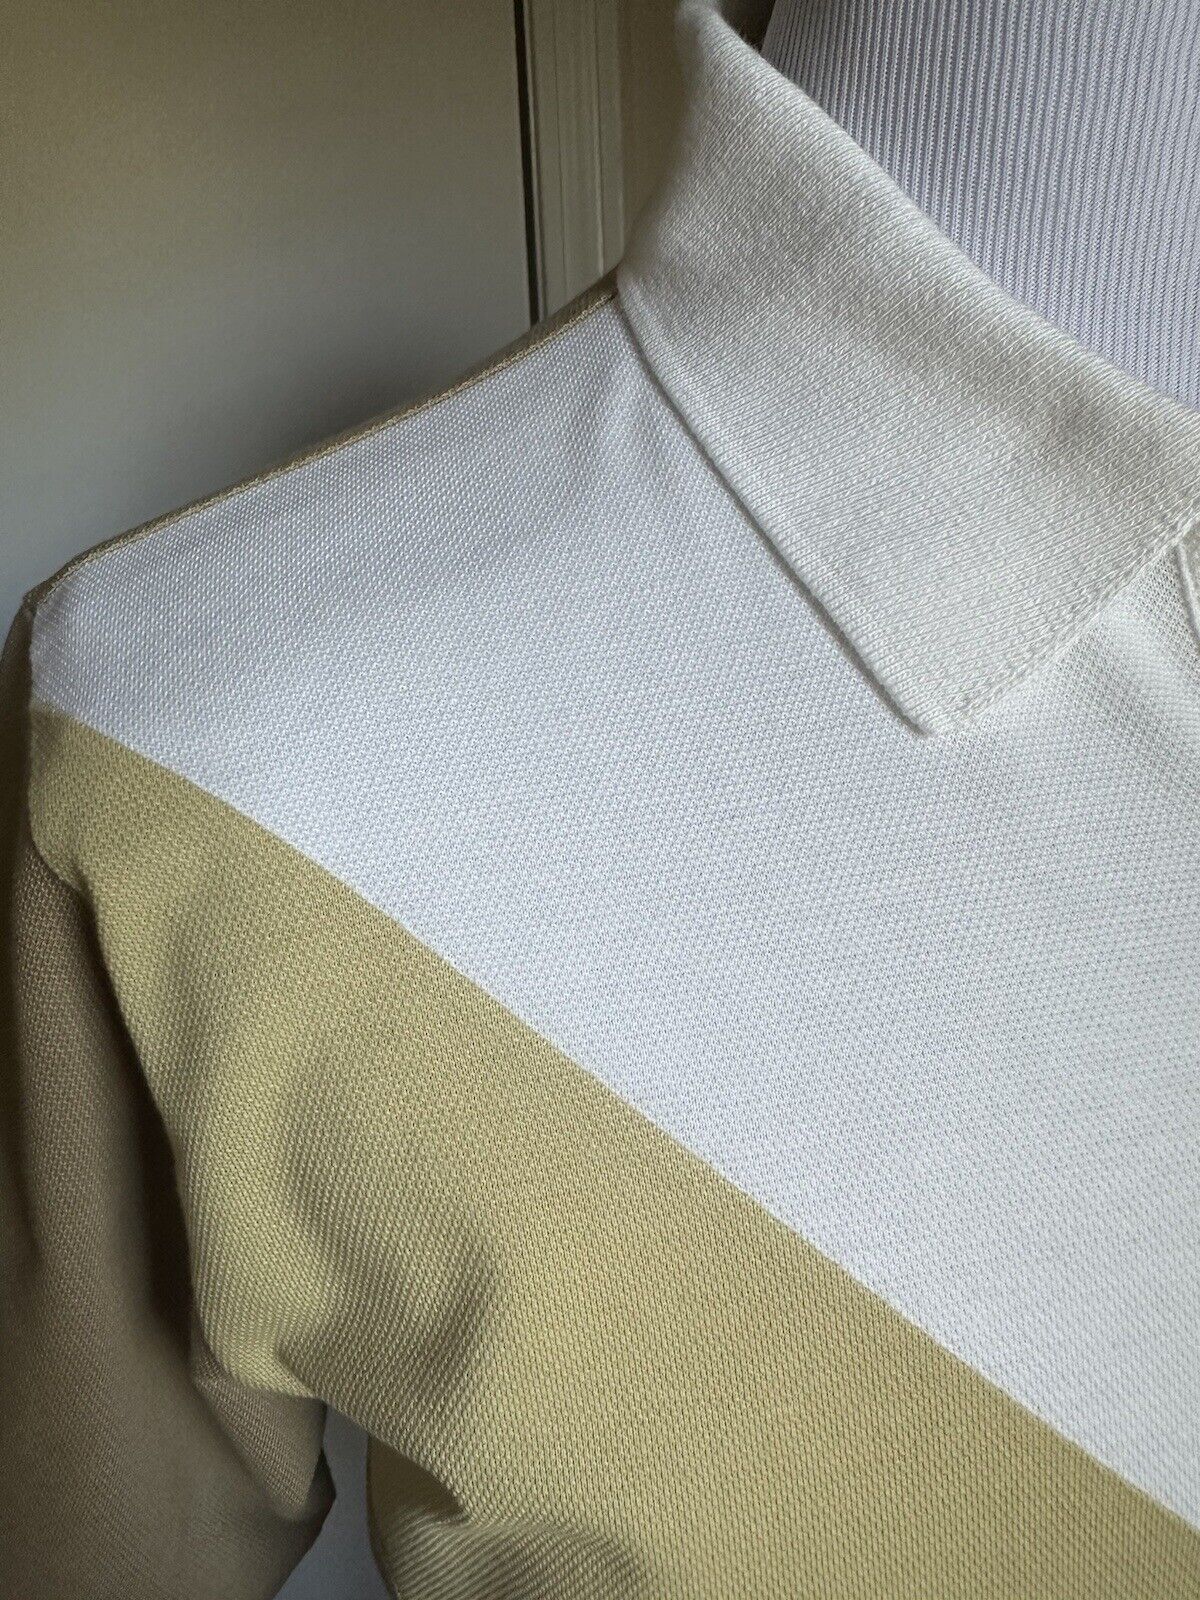 NWT $700 Bottega Veneta Men Cotton Piquet Polo Shirt White/Yellow/Brown Size M